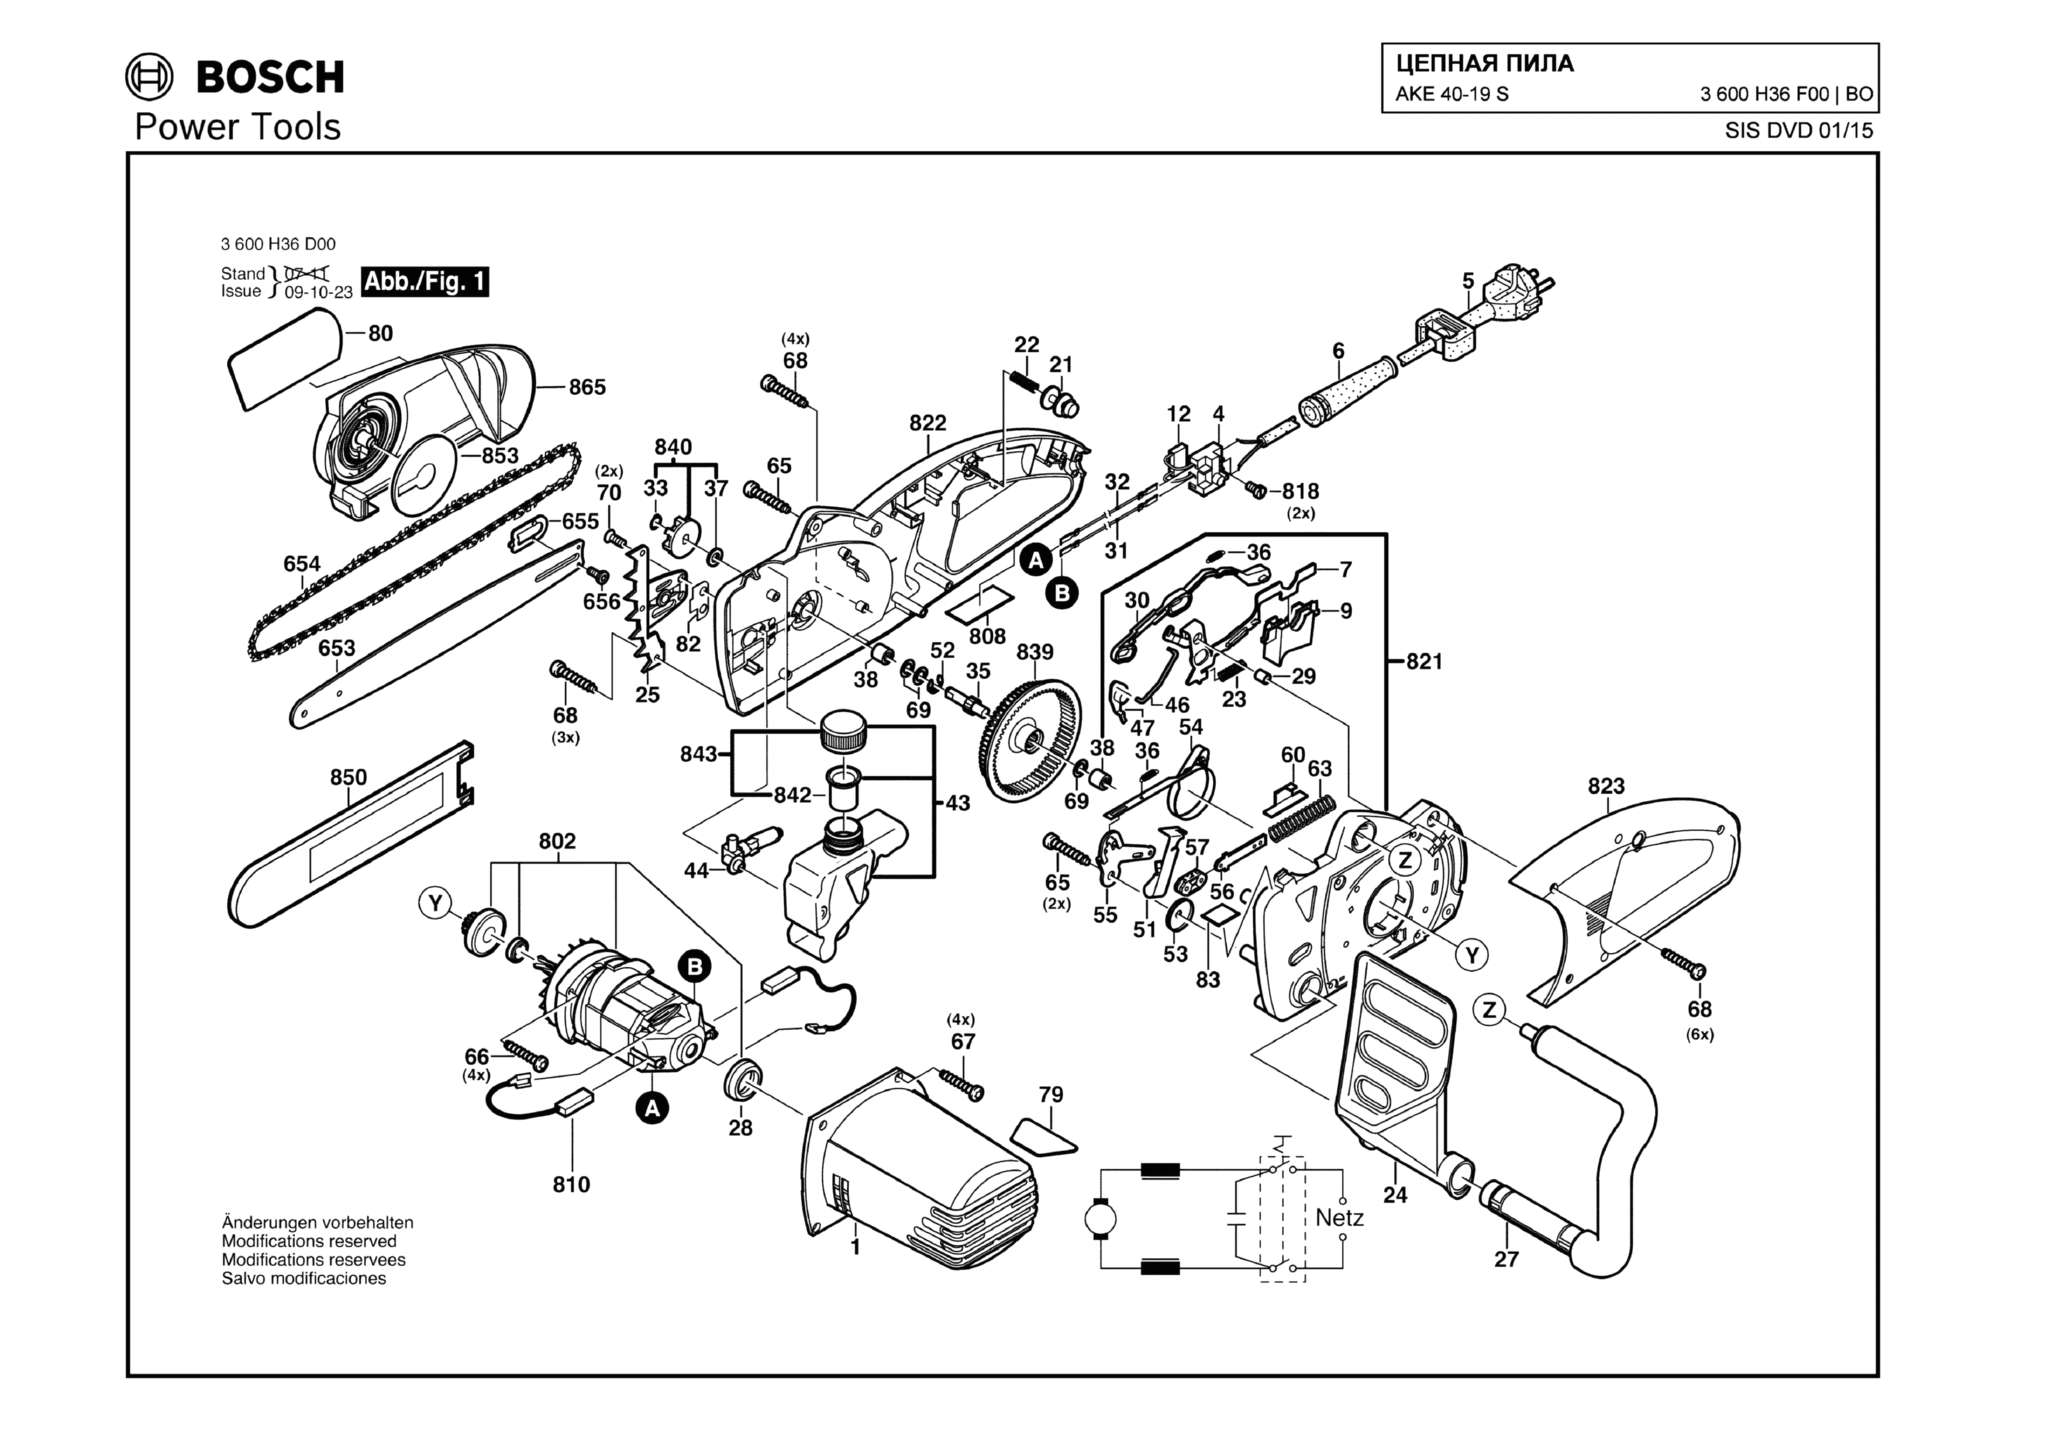 Запчасти, схема и деталировка Bosch AKE 40-19 S (ТИП 3600H36F00)